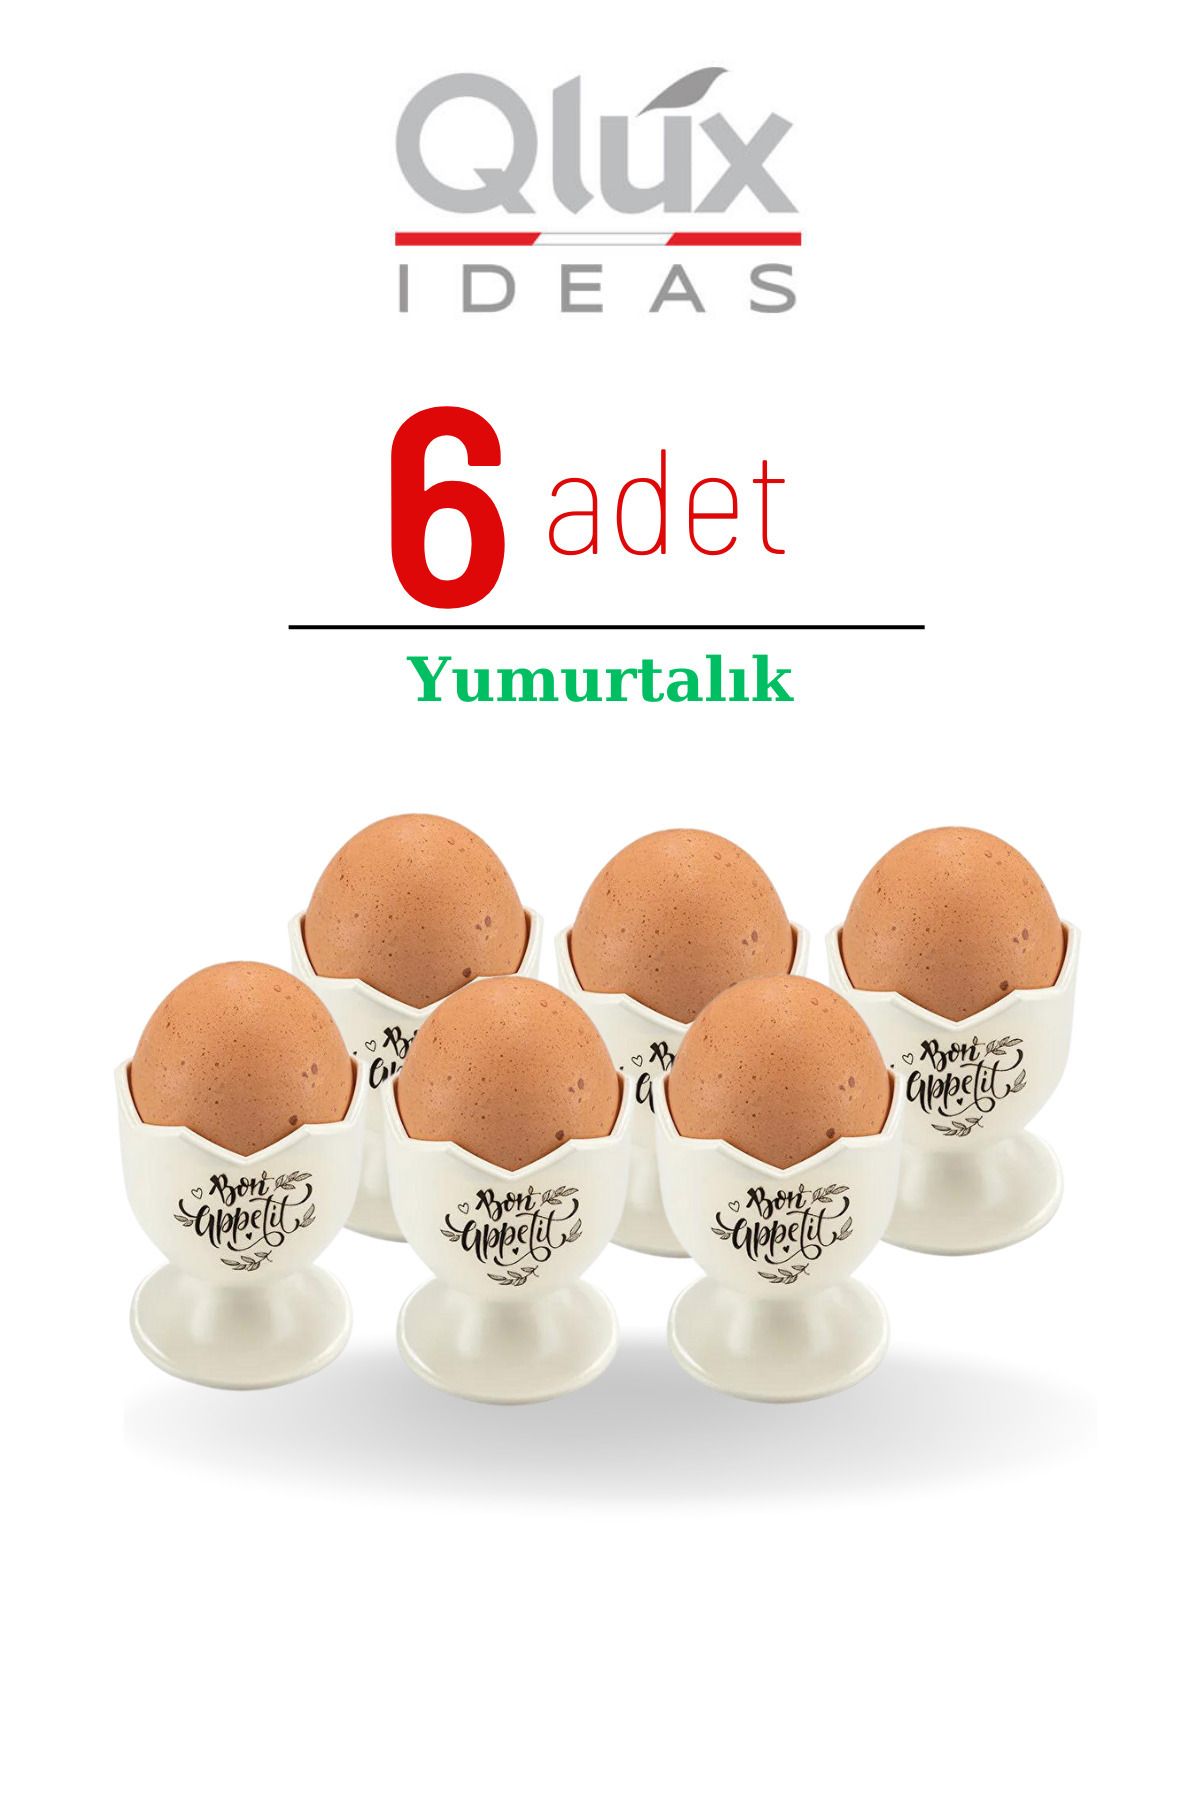 QLUX IDEAS Yummy Kahvaltı Sofraları Için Yumurtalık (6 ADET)